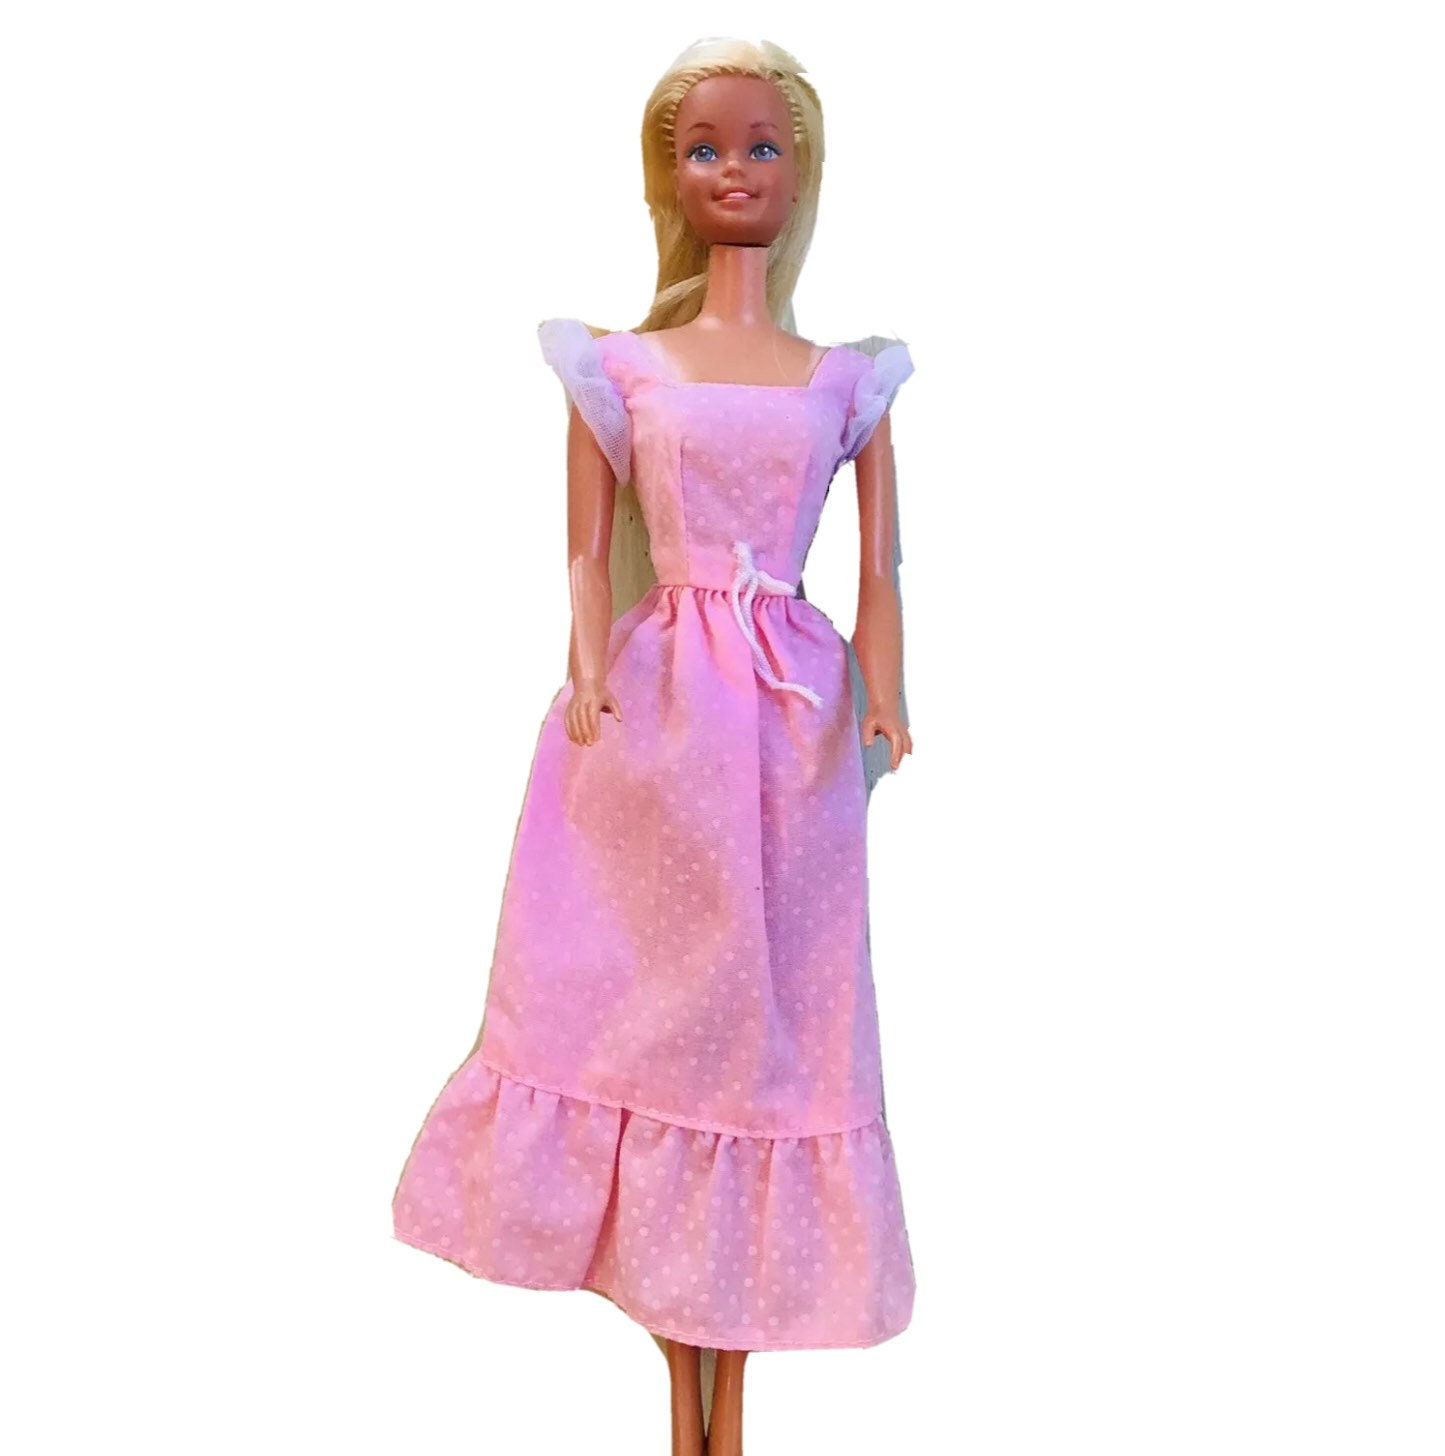 Servilletas de Barbie Sweet Mattel (16 uds.)✔️ por sólo 2,70